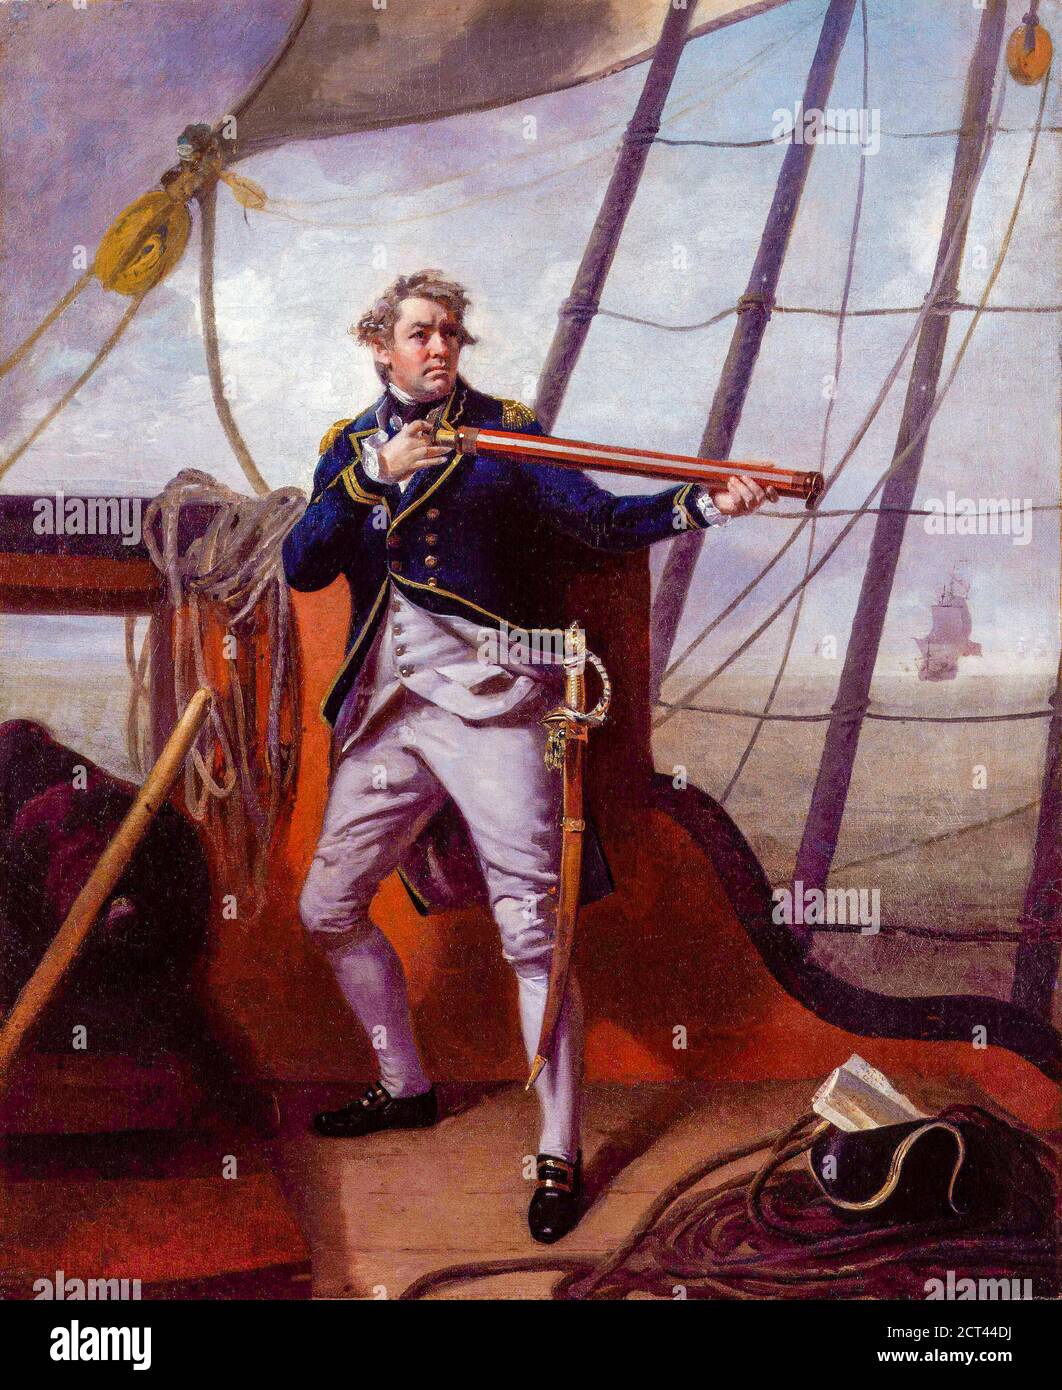 Admiral Adam Duncan, 1. Viscount Duncan (1. Juli 1731 – 4. August 1804) war ein britischer Admiral, der am 11. Oktober 1797 die niederländische Flotte vor Camperdown (nördlich von Haarlem) besiegte. Dieser Sieg gilt als eine der bedeutendsten Aktionen in der Schiffsgeschichte. Von Henri-Pierre Danloux (24. Februar 1753 – 3. Januar 1809) war ein französischer Maler und Zeichner. Stockfoto